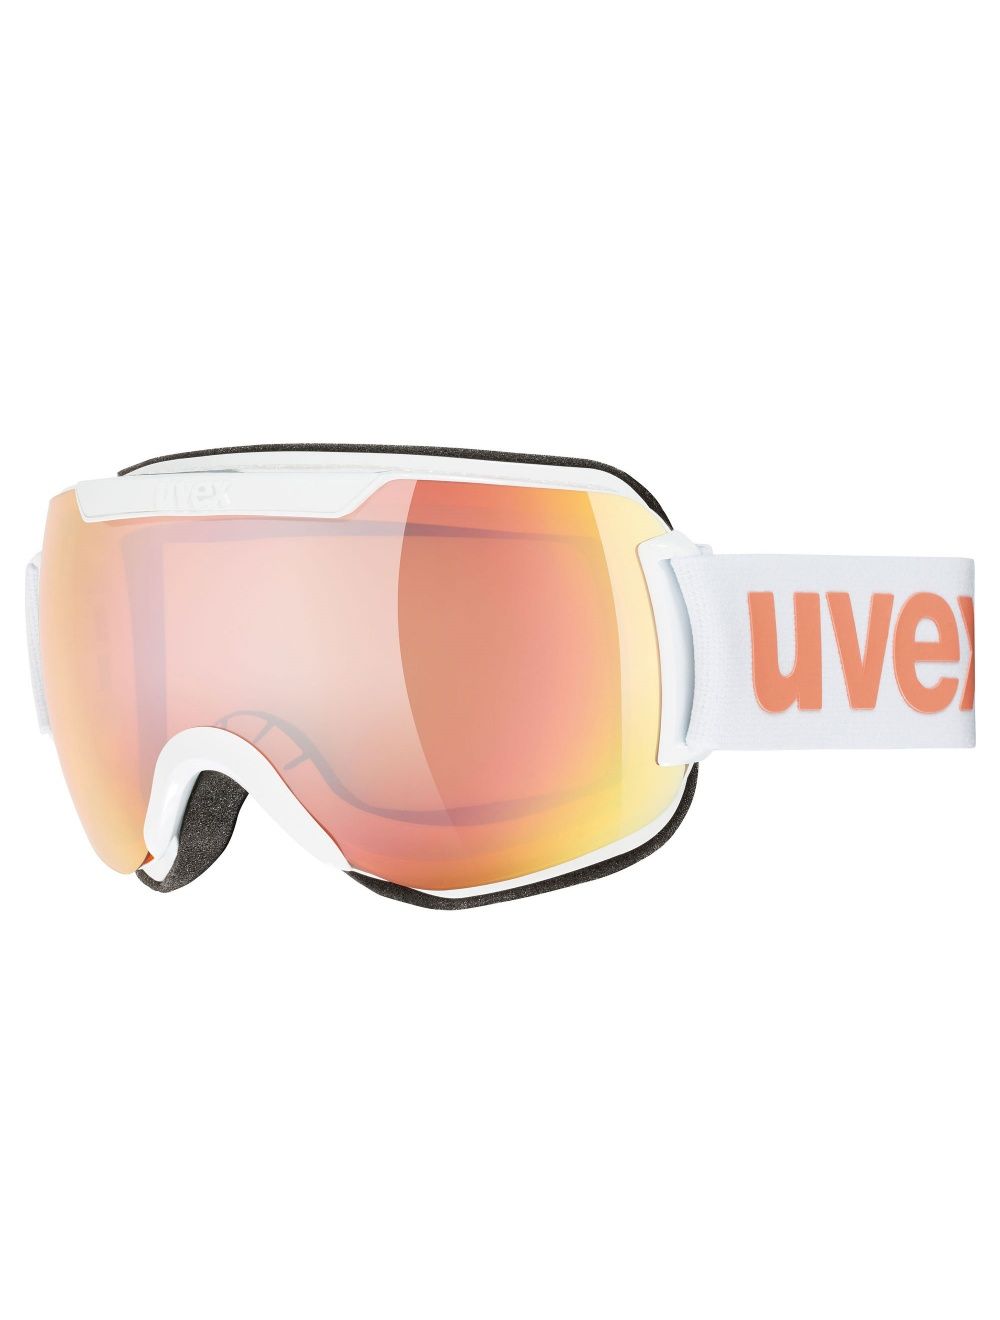 UVEX Gogle narciarskie DOWNHILL 2000 CV 1030 white/rose orange